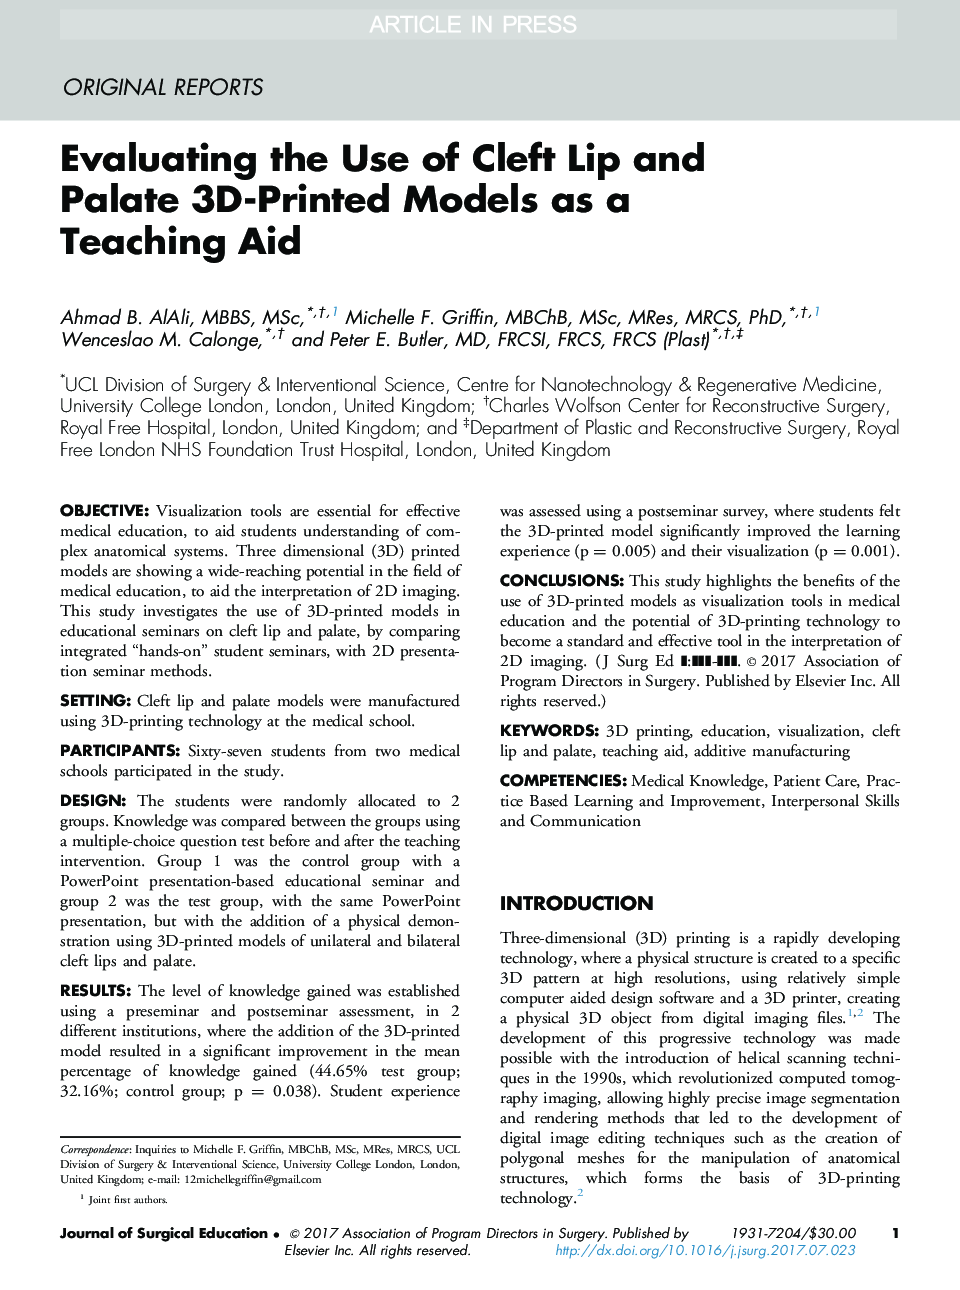 ارزیابی استفاده از مدل های سه بعدی چاپ لب و شکسته به عنوان کمک آموزشی 